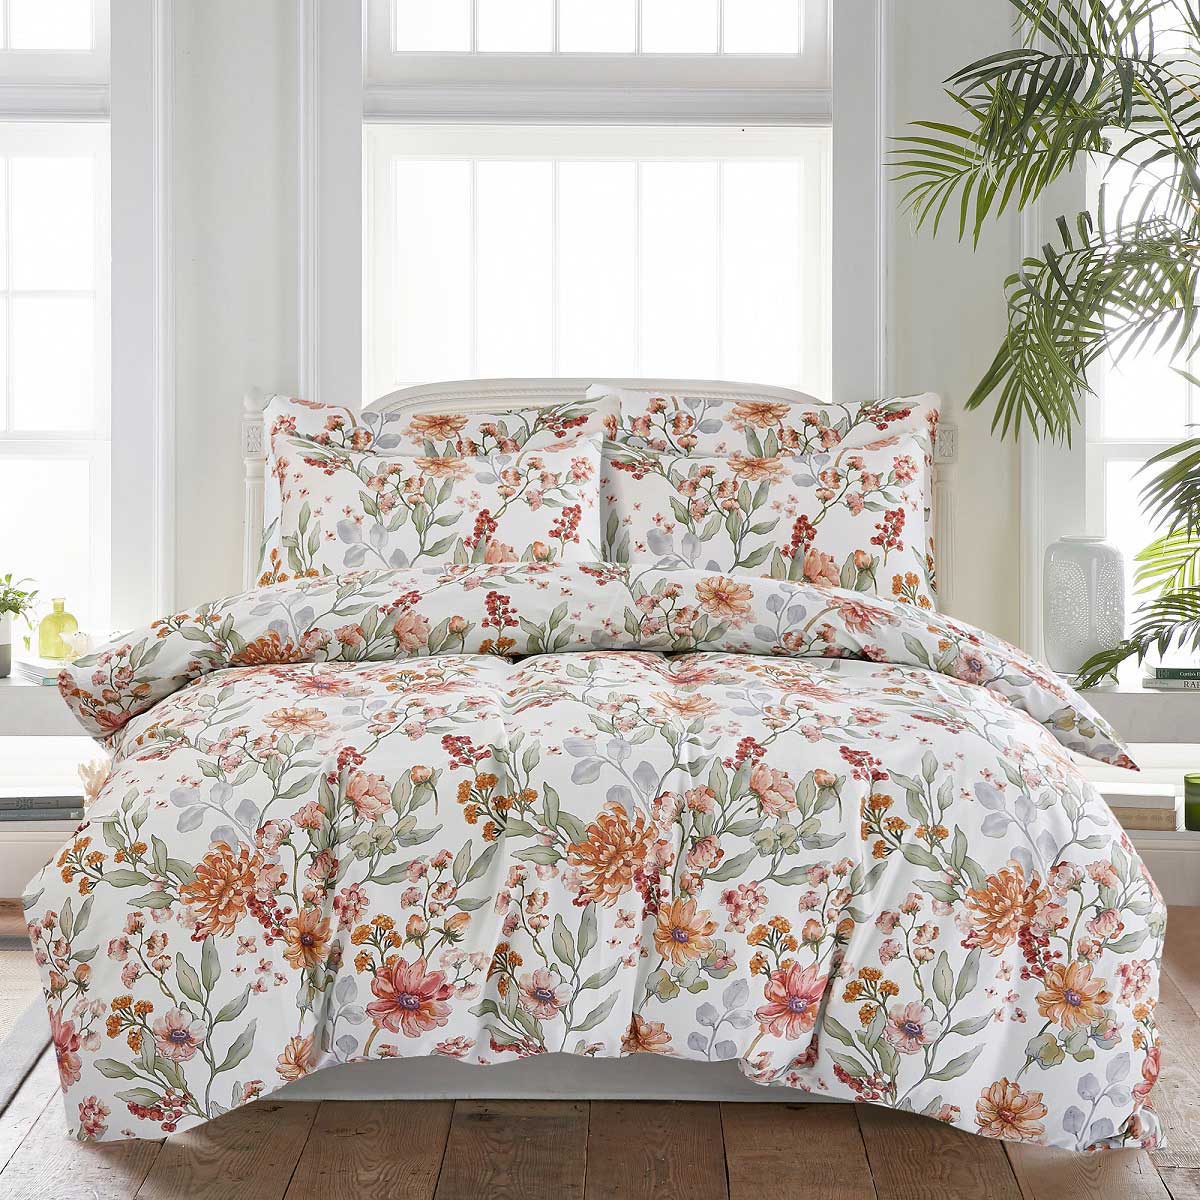 Комплект постельного белья 1,5-спальный Pappel bright flowers